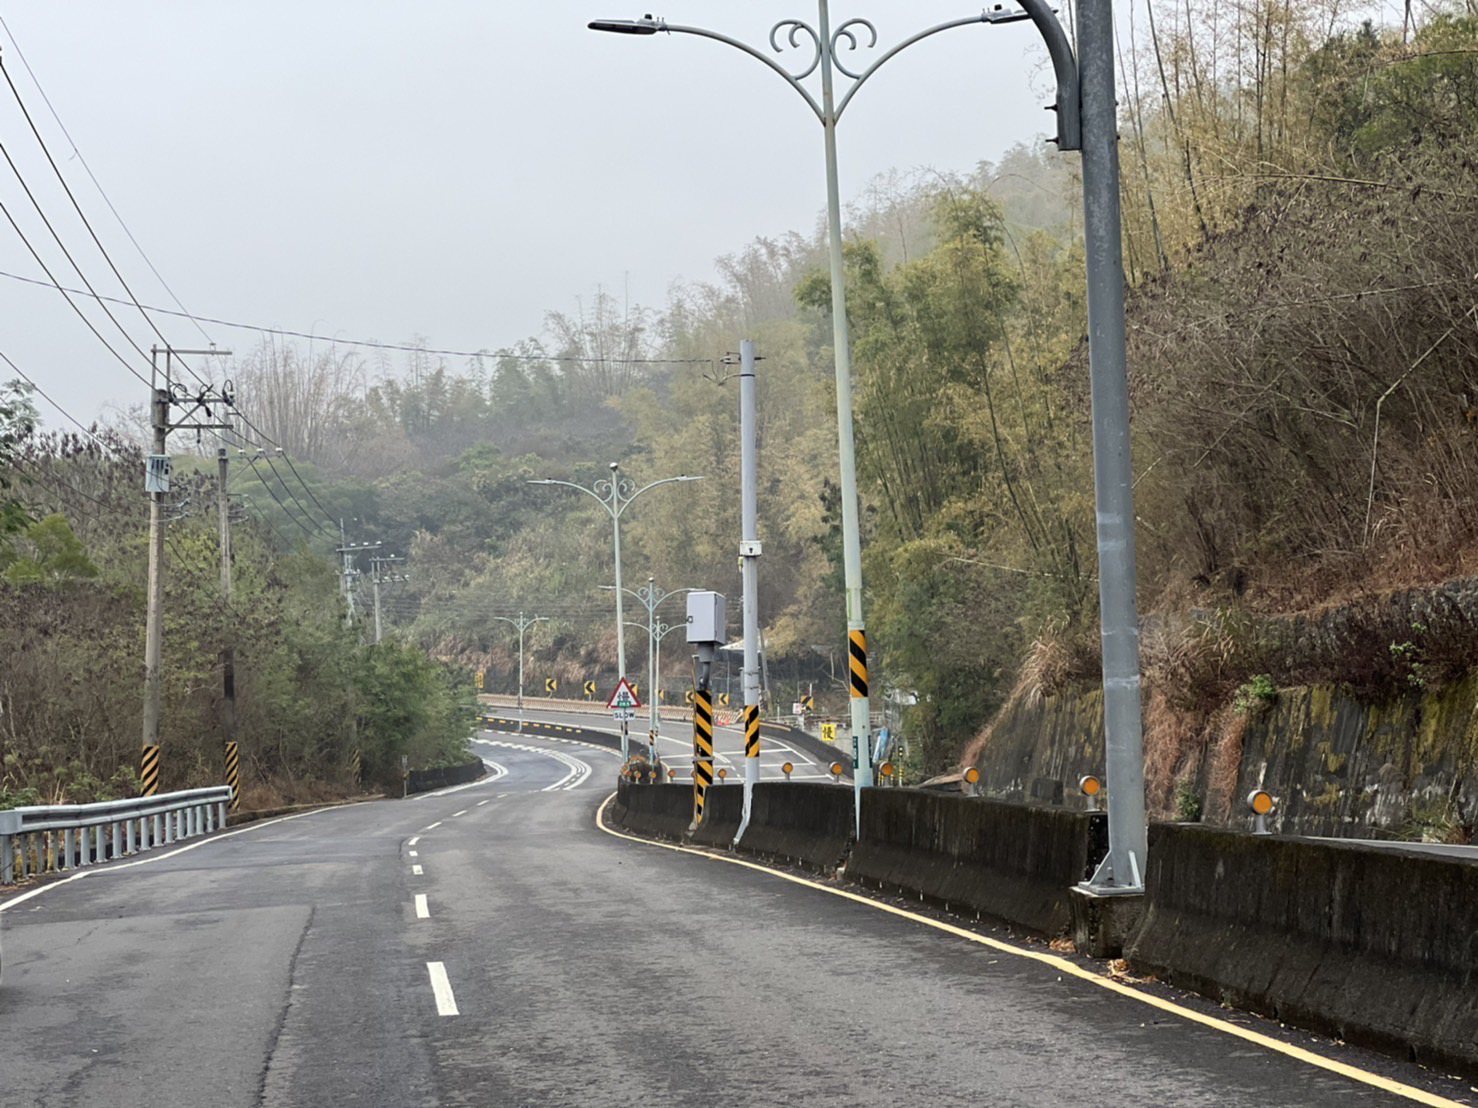 台南市道182线龙崎段「区间测速」原有6公里，今年起调整从27.2公里至28.5公里段约1公里多距离，作为缩短后区间测速新的双向侦测范围。图／台南市交通大队提供